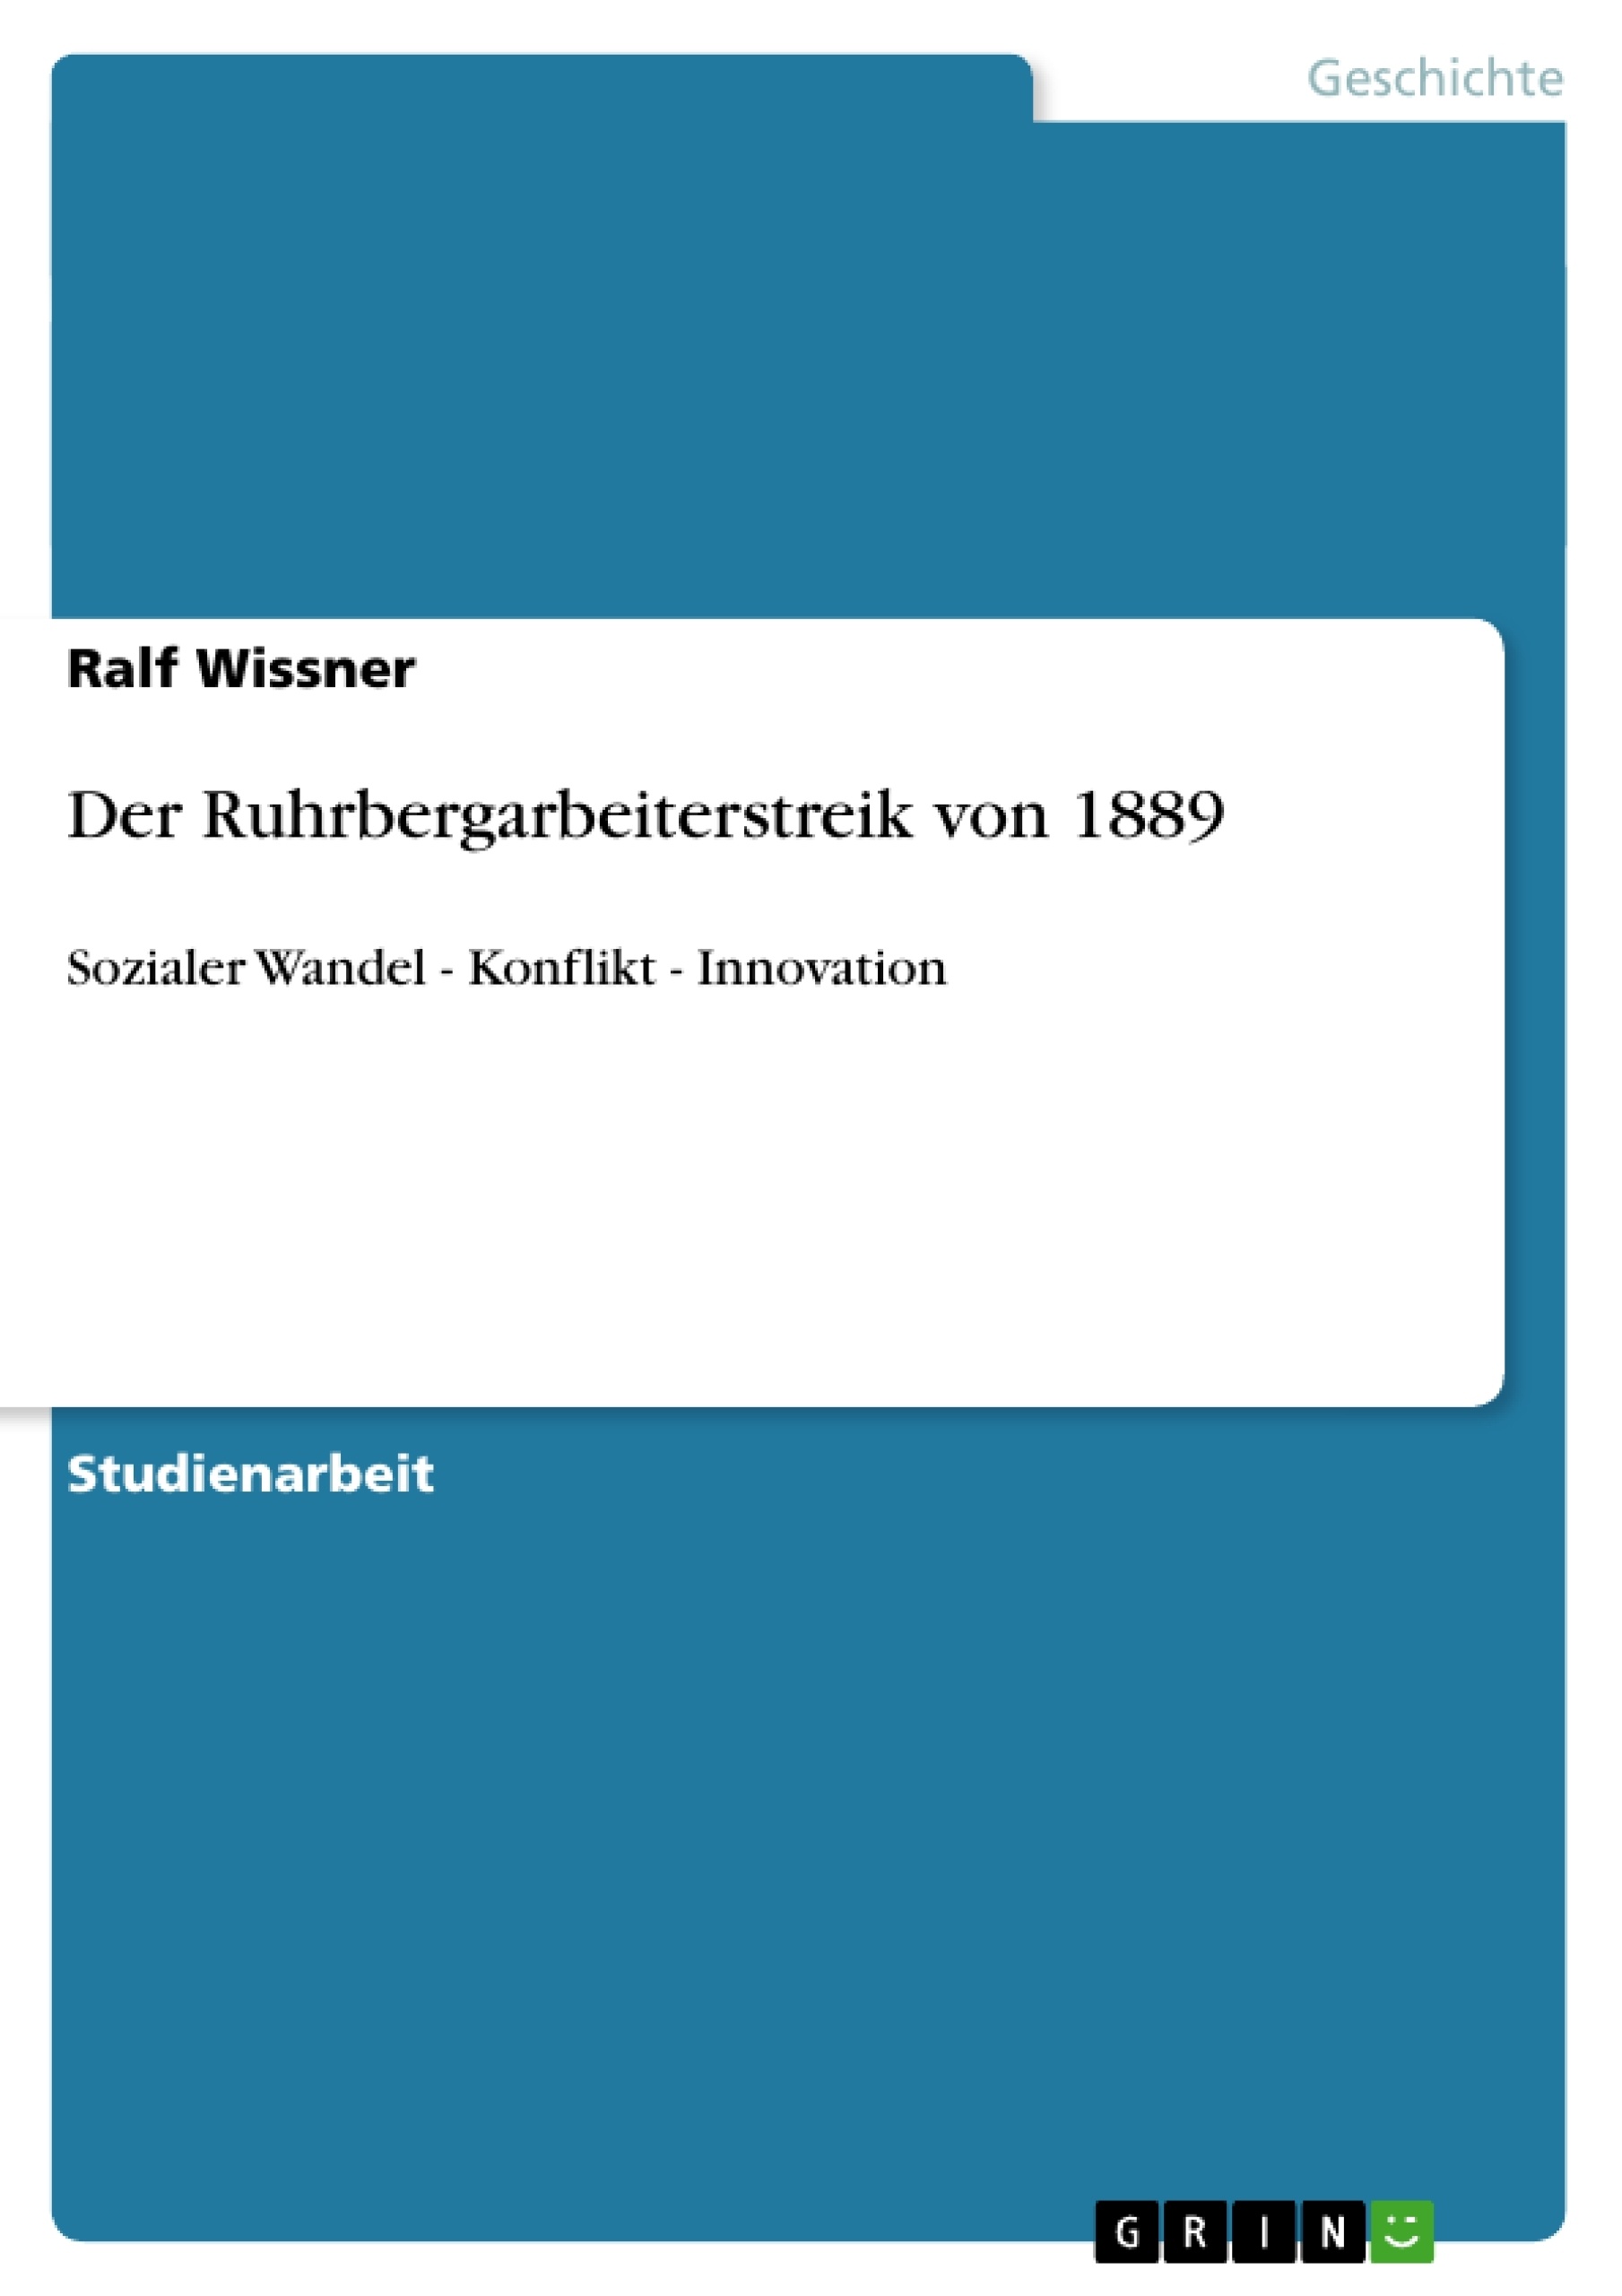 Título: Der Ruhrbergarbeiterstreik von 1889